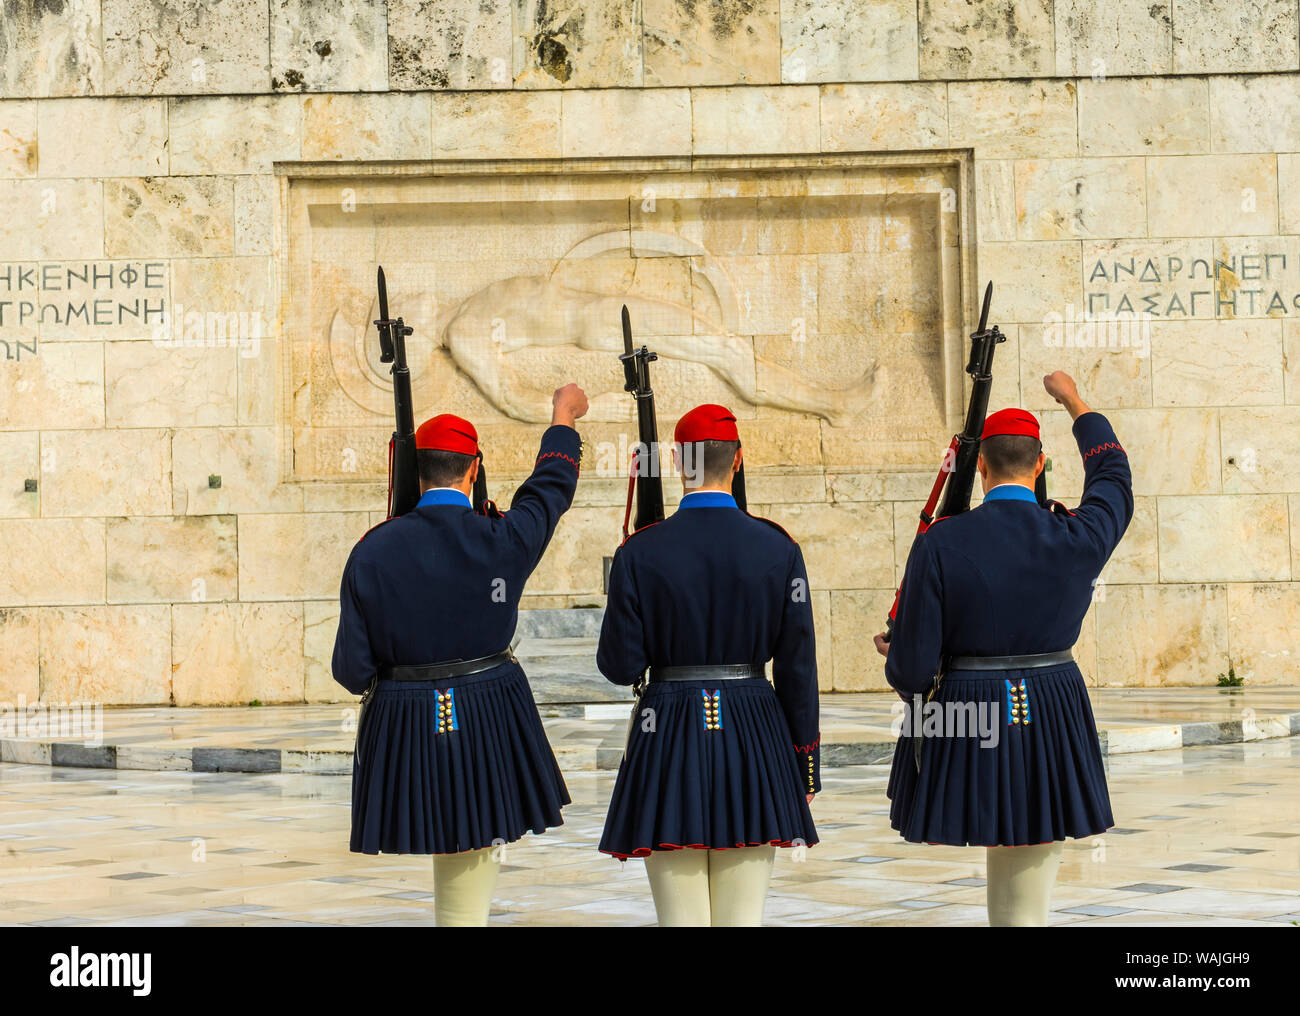 Cambiare la protezione presso la tomba del Milite Ignoto, Piazza Syntagma davanti al Parlamento, Atene, Grecia. I soldati sono Evzones della Guardia Presidenziale. Foto Stock